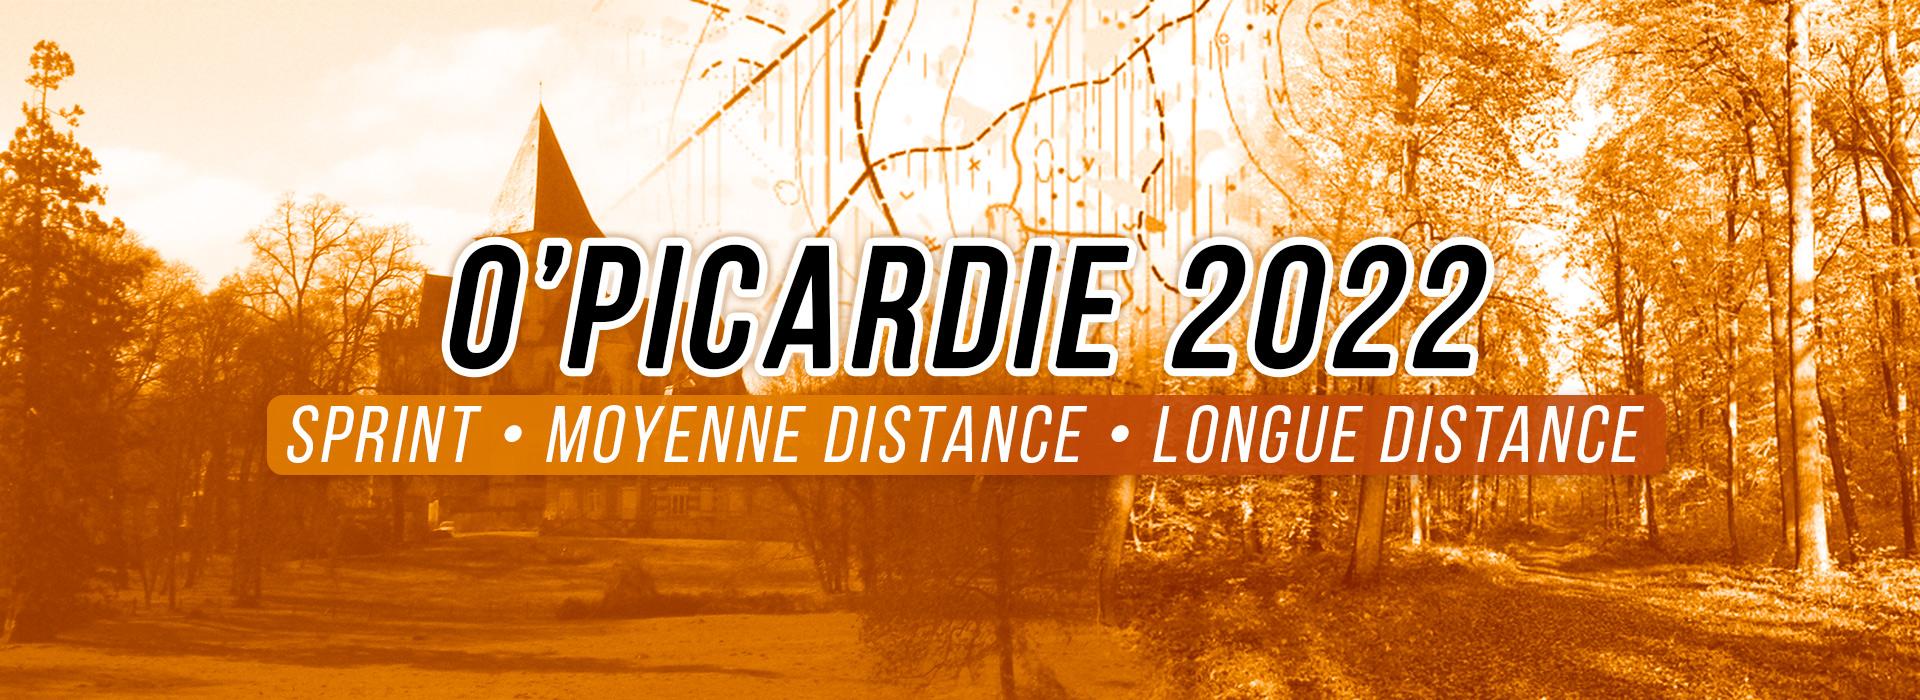 Banner opicardie 2022